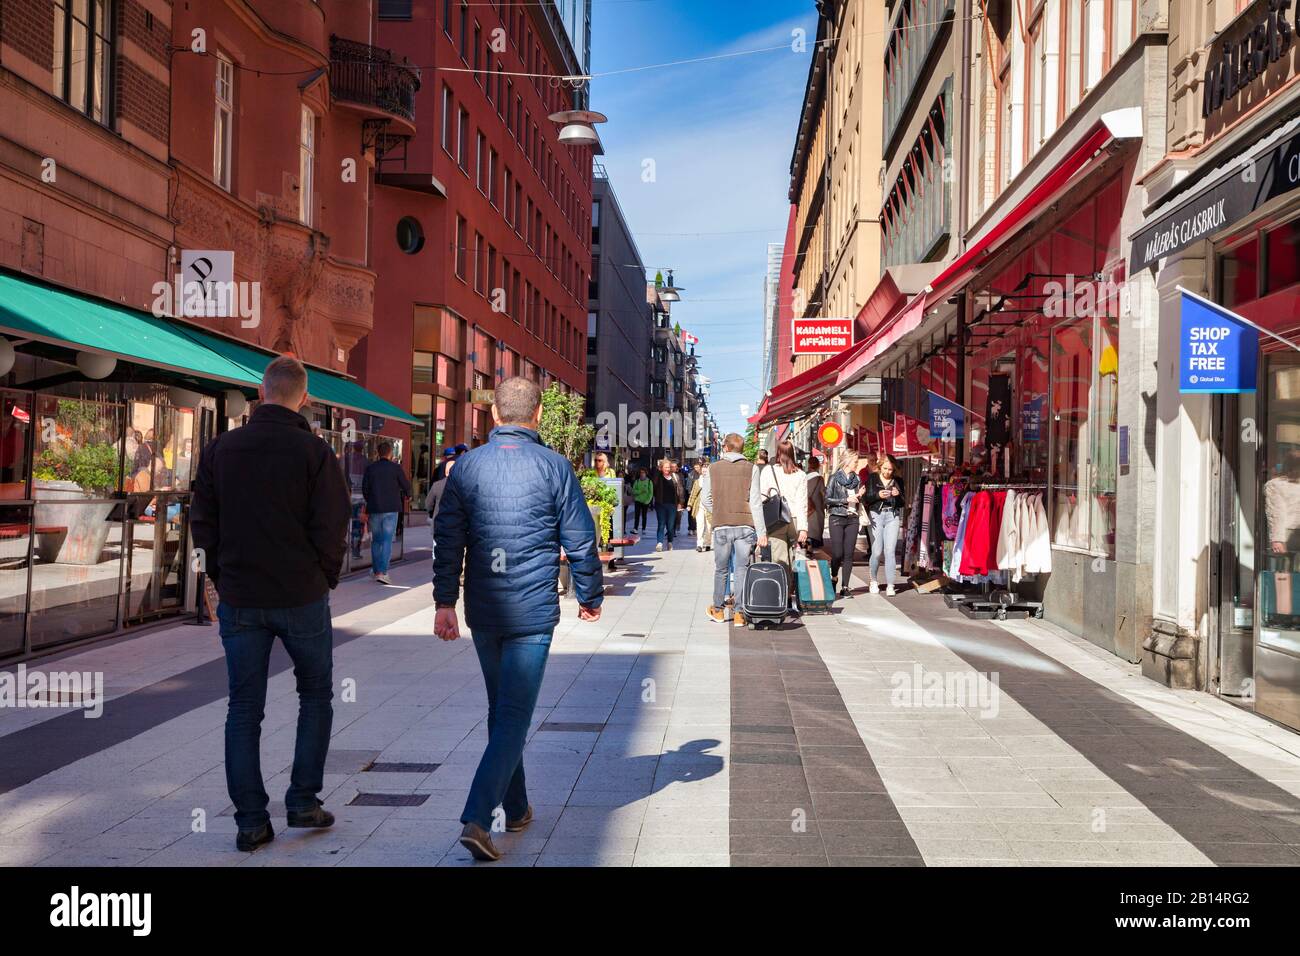 16 septembre 2018: Stockholm, Suède - Shoppers et touristes à Drottninggatan lors d'un week-end ensoleillé d'automne. Banque D'Images